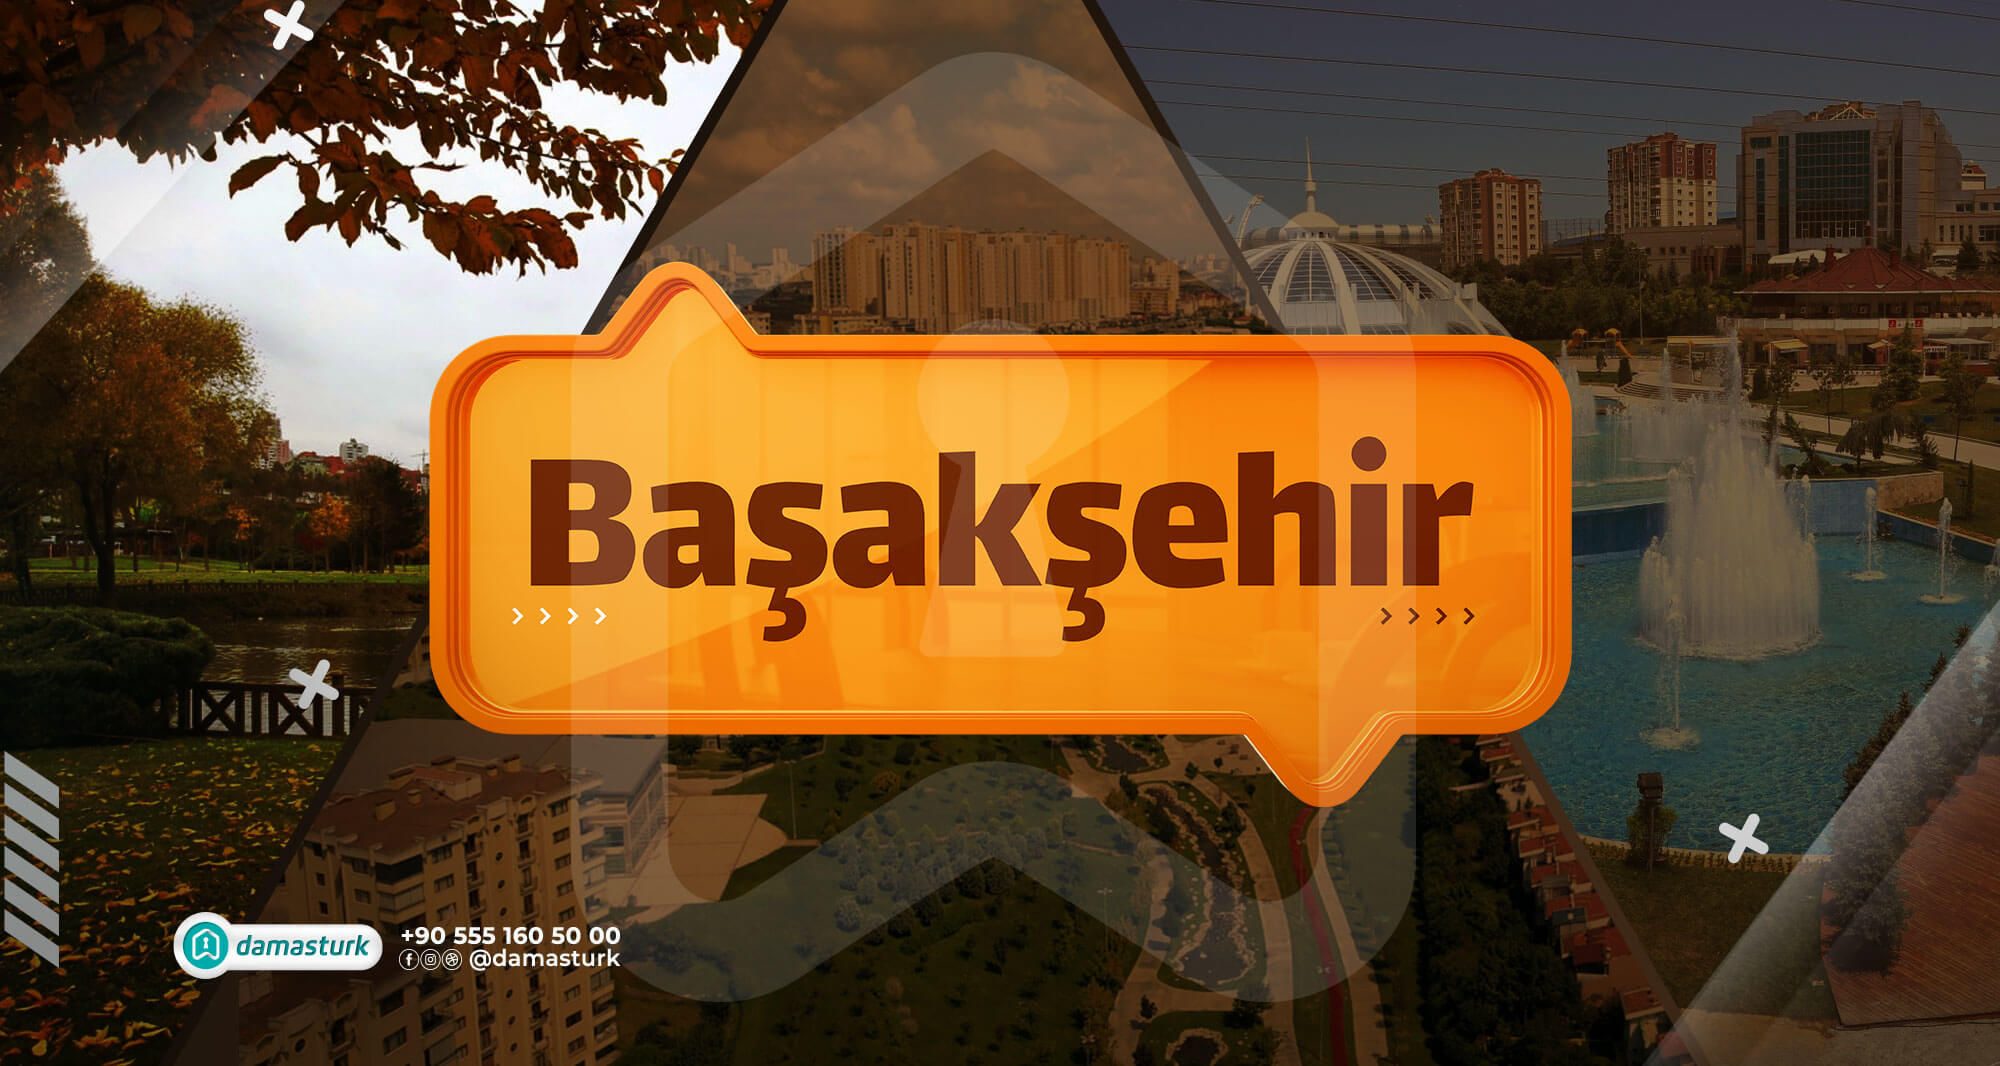 الأماكن السياحية والترفيهية في منطقة باشاك شهير 2021